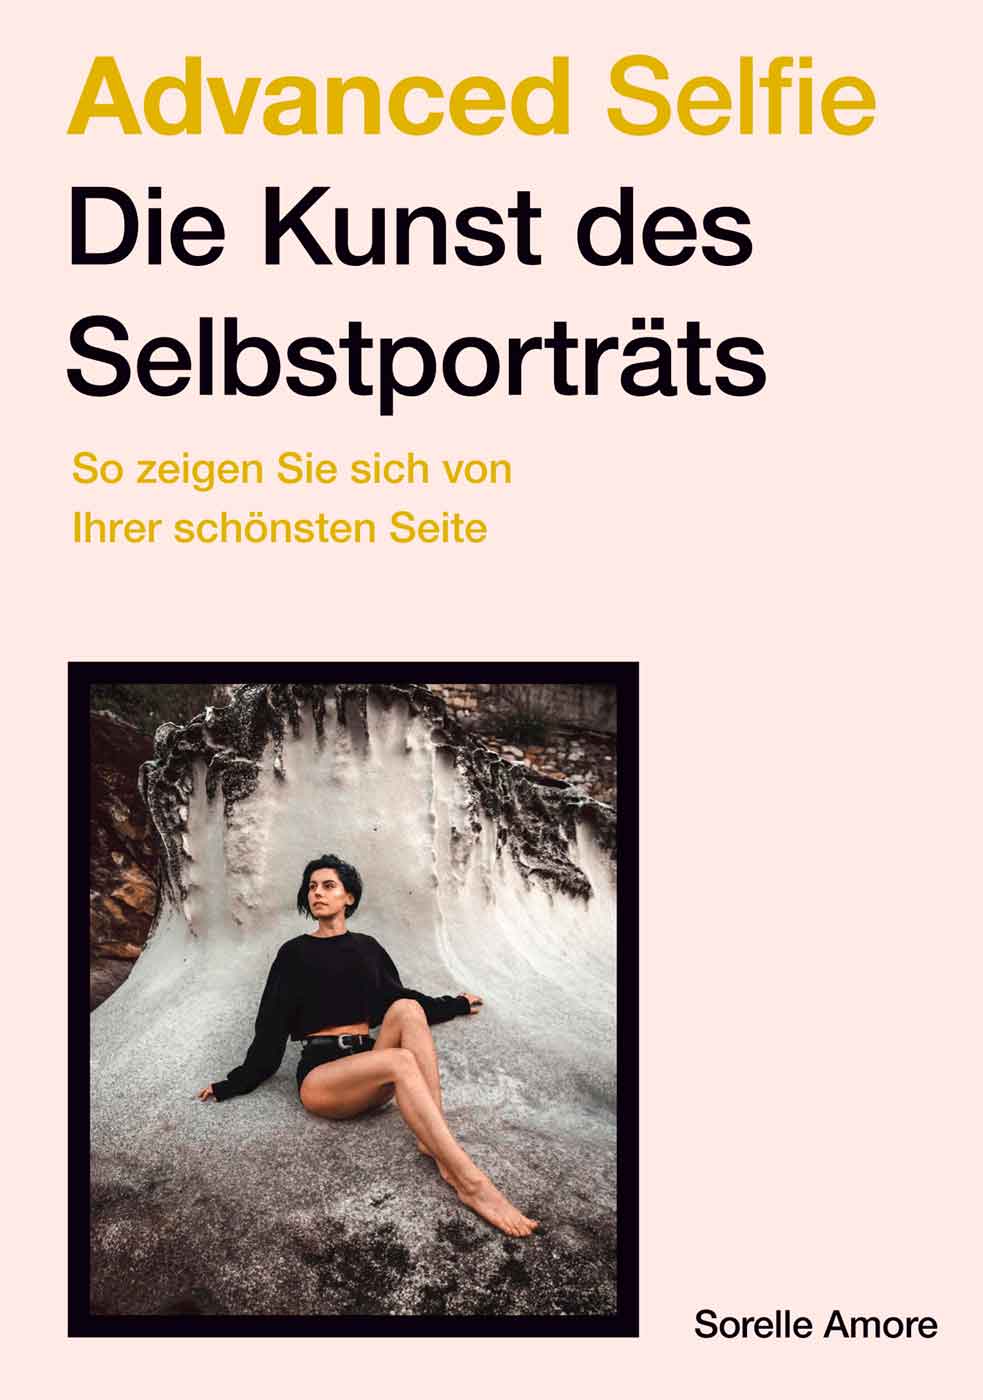 Anzeige: Lesetipps für Gütersloh: Sorelle Amore, »Advanced Selfie, die Kunst des Selbstporträts«